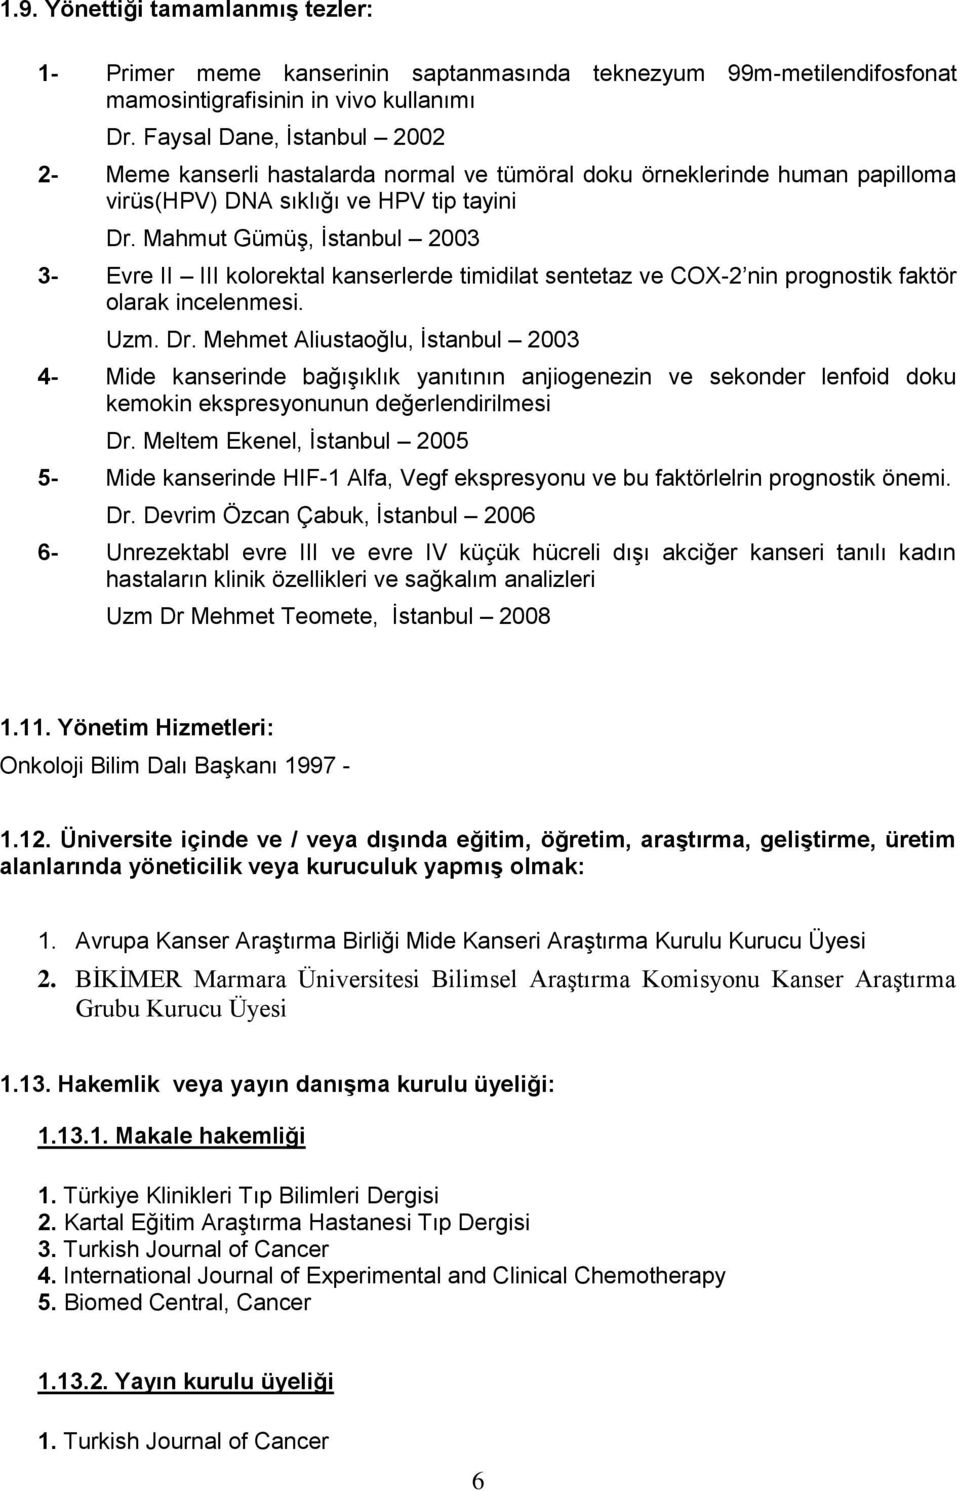 Mahmut Gümüş, İstanbul 2003 3- Evre II III kolorektal kanserlerde timidilat sentetaz ve COX-2 nin prognostik faktör olarak incelenmesi. Uzm. Dr.